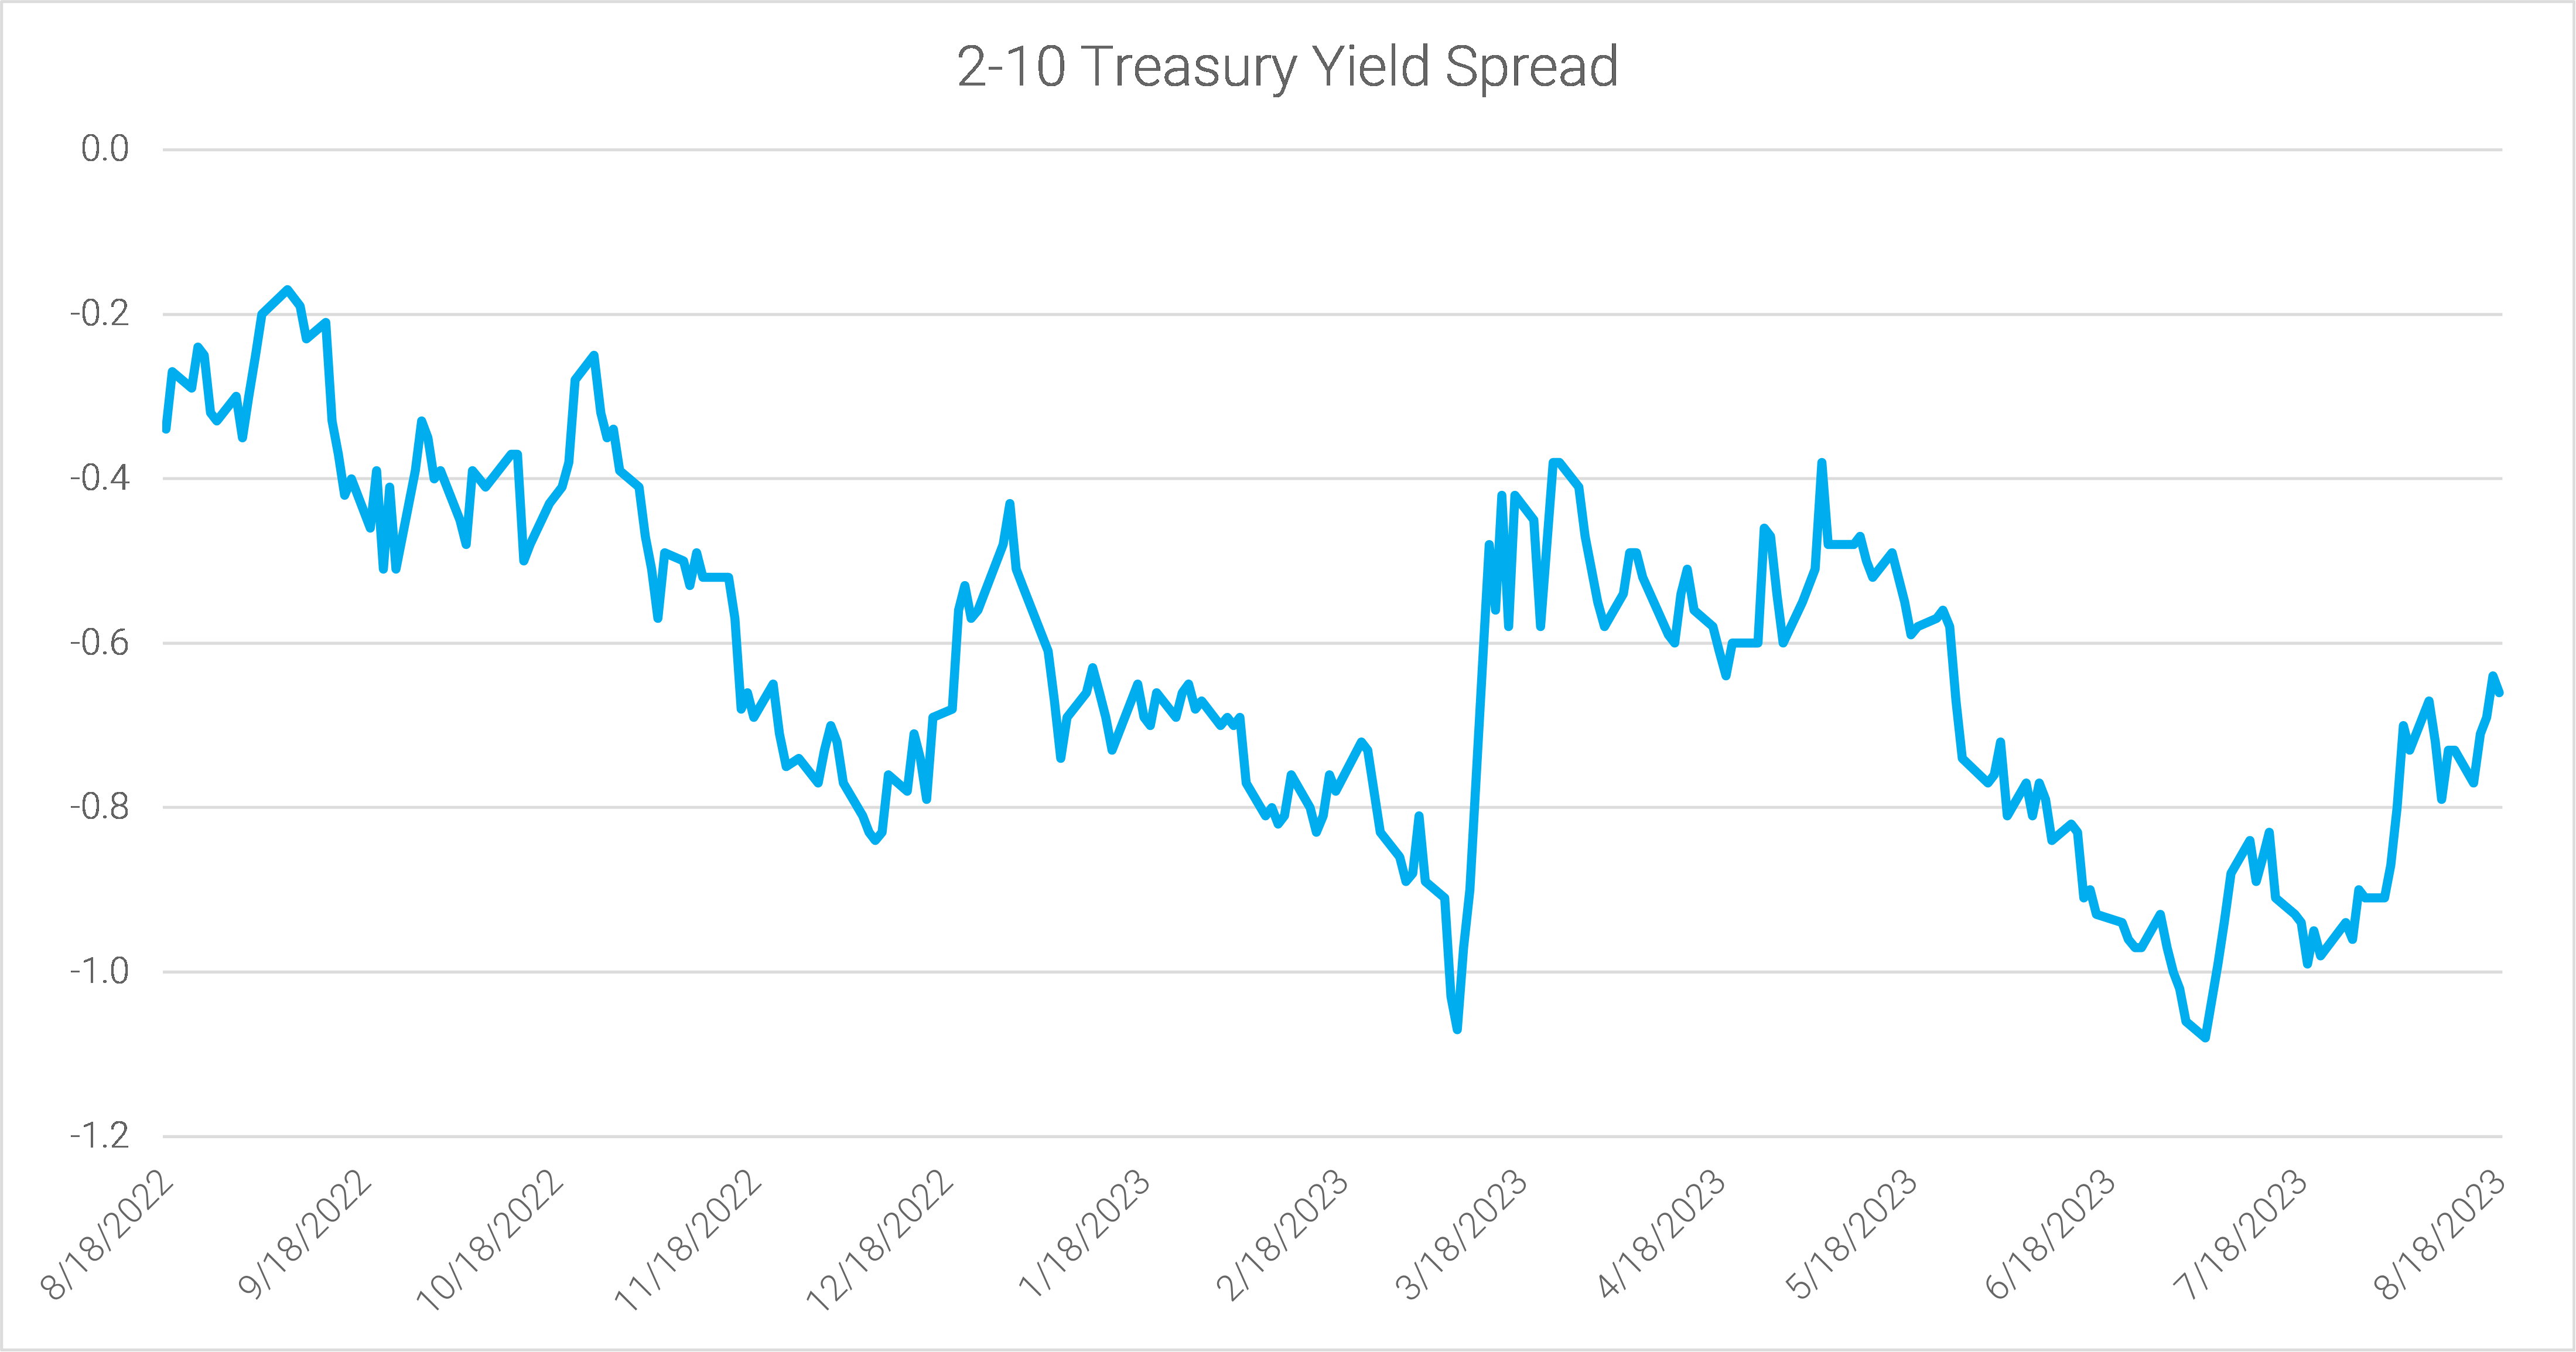 14-the-2-10-spread-narrowed-last-week-to-minus-66bps